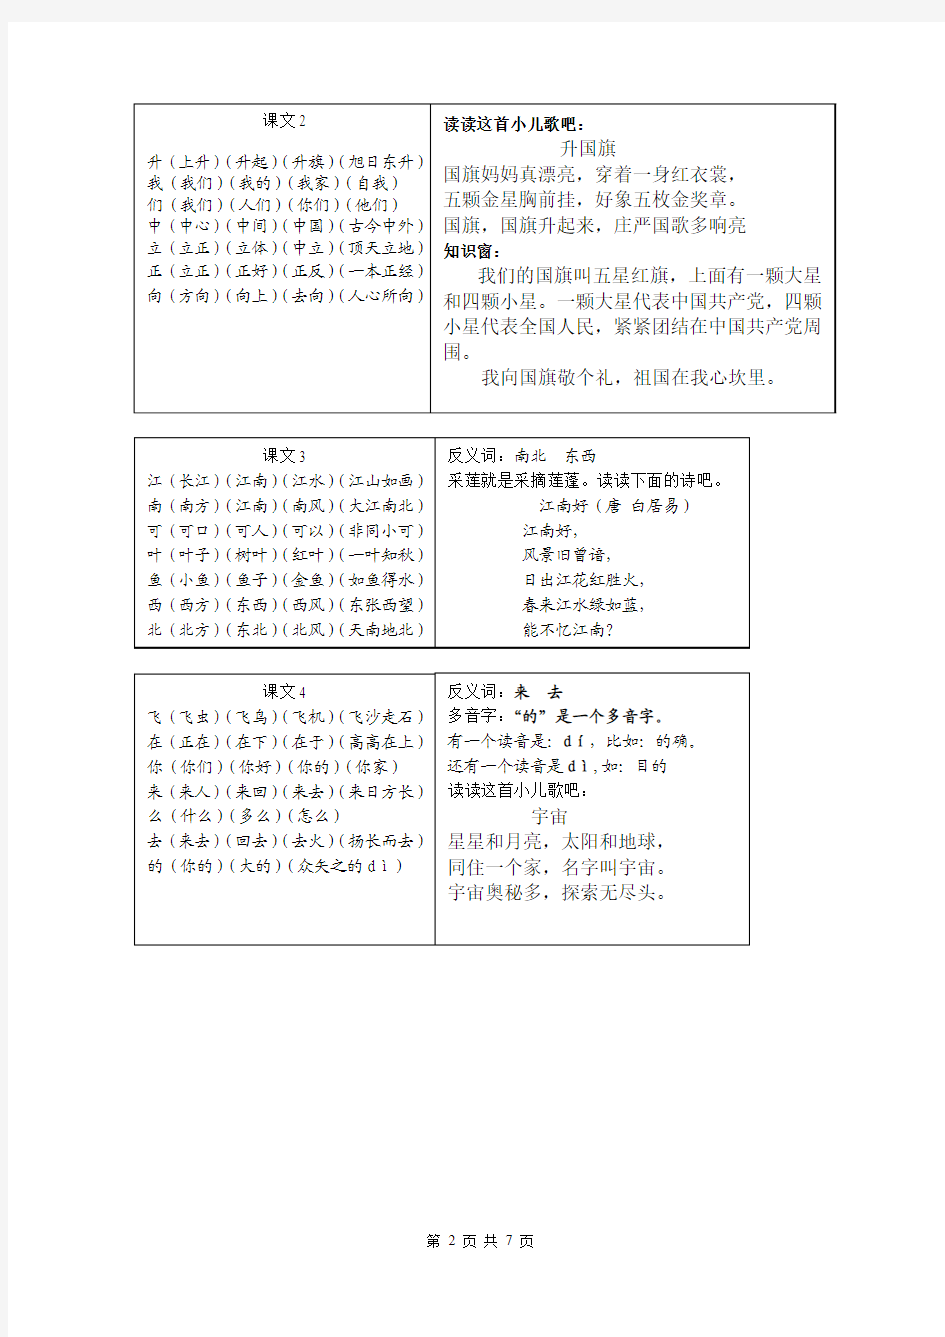 苏教版小学语文一年级上册生字组词(扩词)(字卡)2014